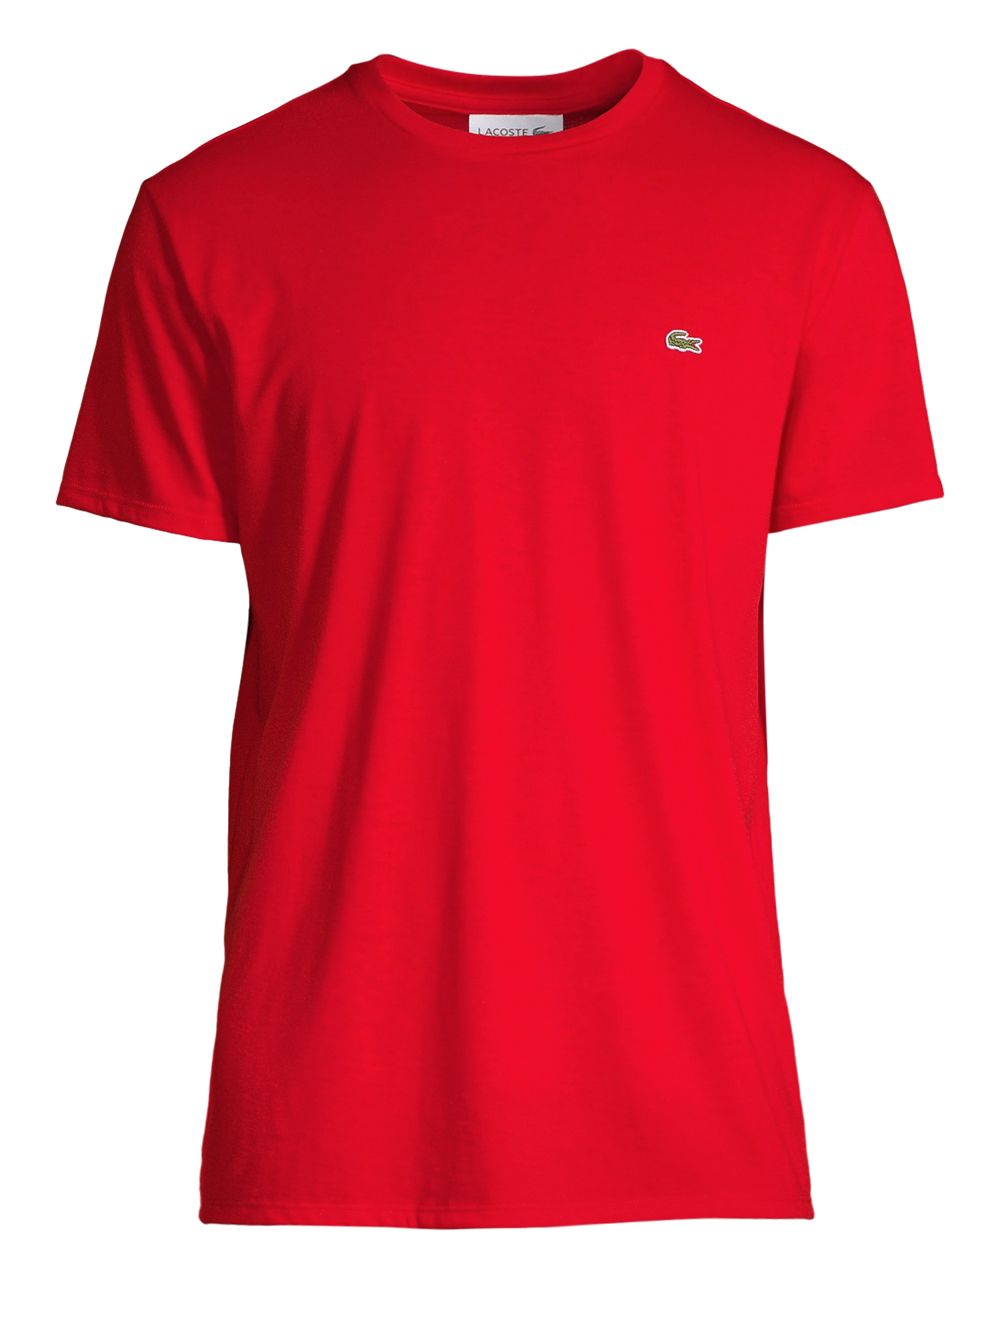 Хлопковая футболка с круглым вырезом Lacoste, красный